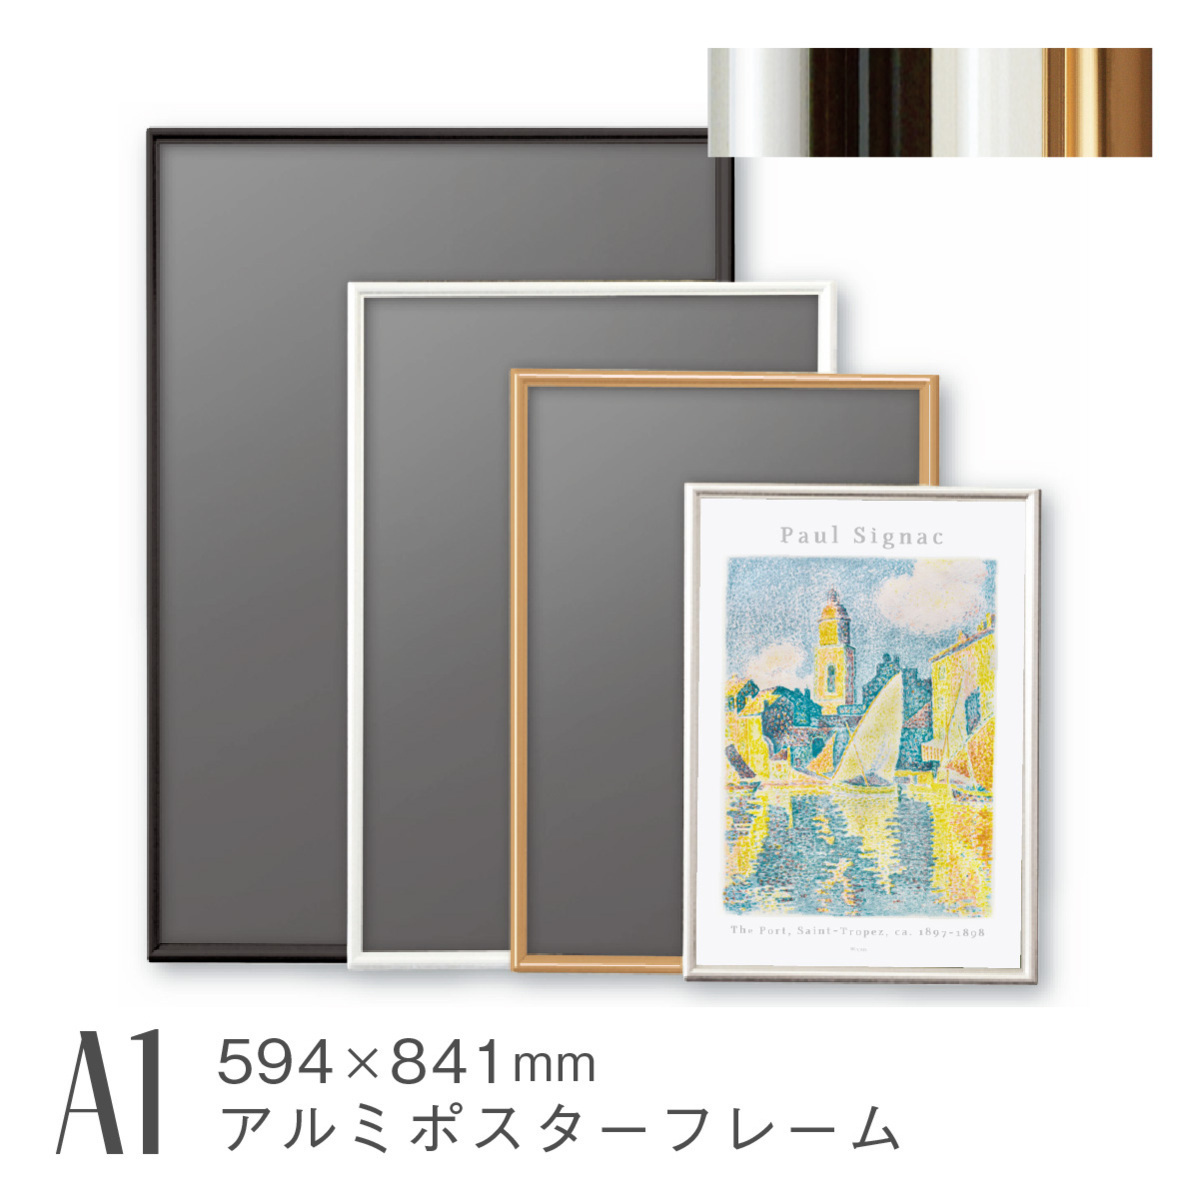 모양 A1 검정색 포스터 프레임 알루미늄 페인팅 아트 액자 대형 초대형 벽걸이 형 경량 AR-SH-A1, 미술용품, 사진 프레임, 포스터 프레임